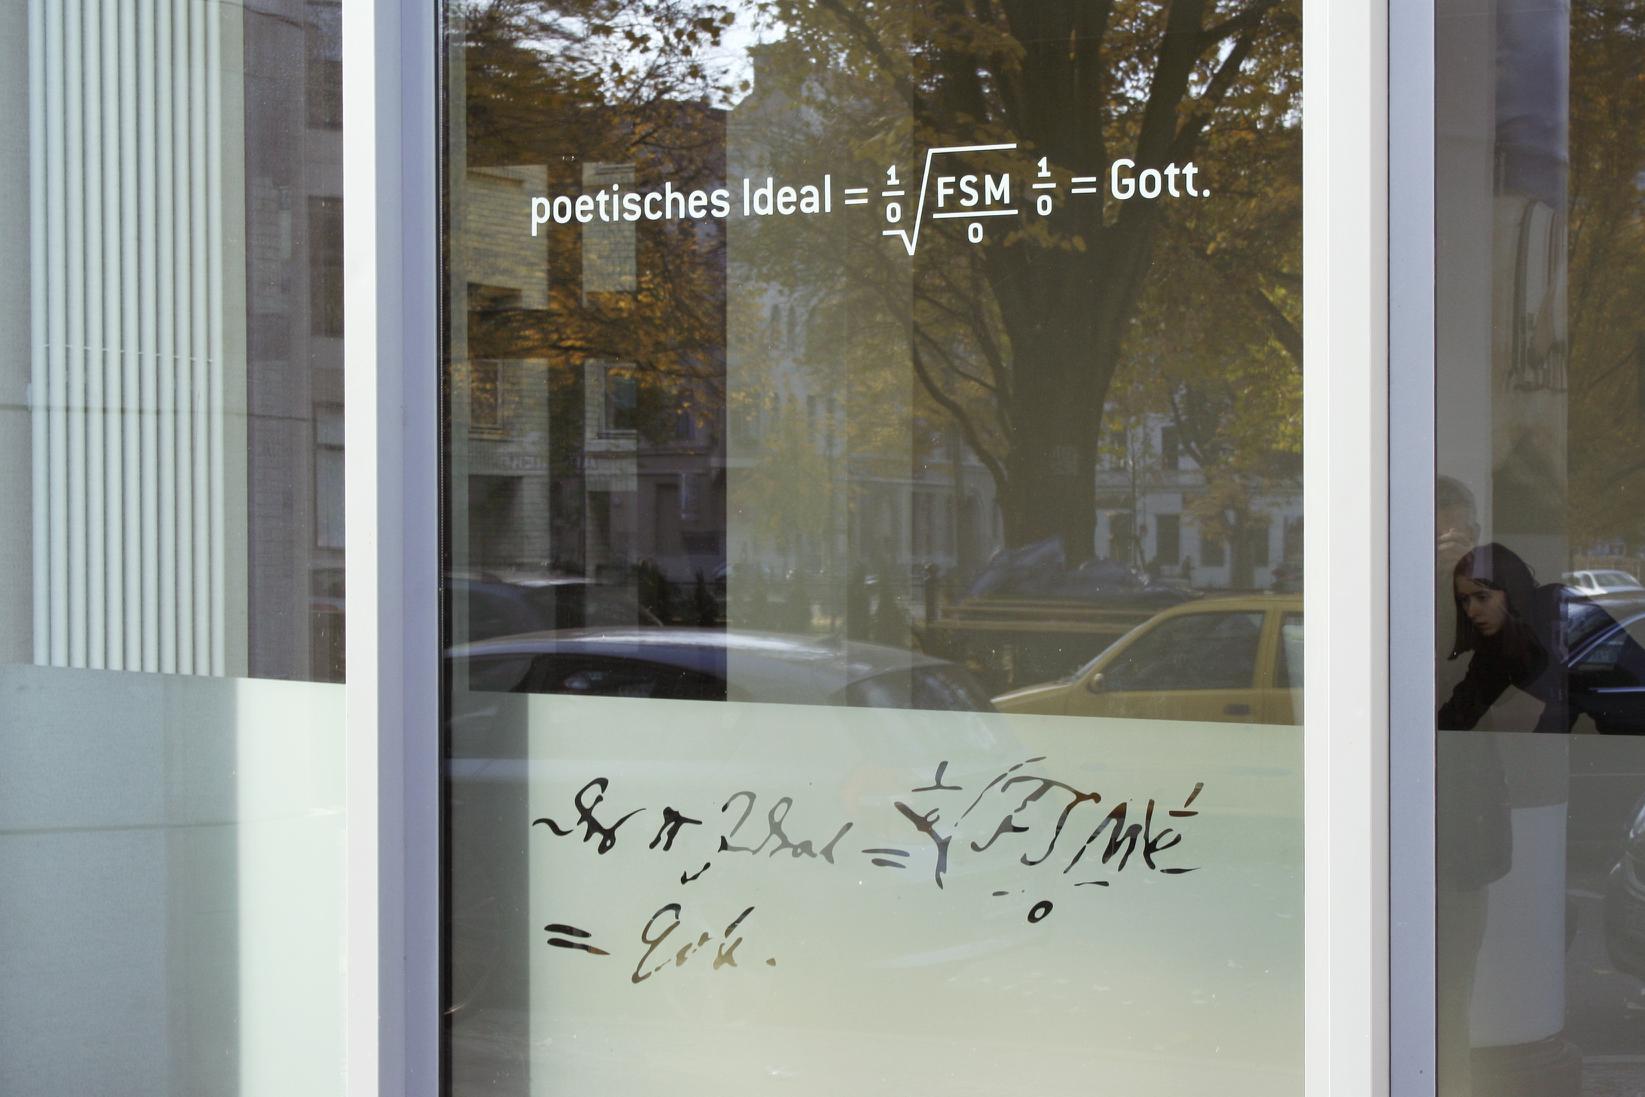 Formel für das poetische Ideal nach Friedrich Schlegel, Bild: 1/0 steht für „unendlich groß“; F=Fantastik, S=Sentimentalität und M=Mimik. Gestaltung: Adler & Schmit, Berlin 2011.